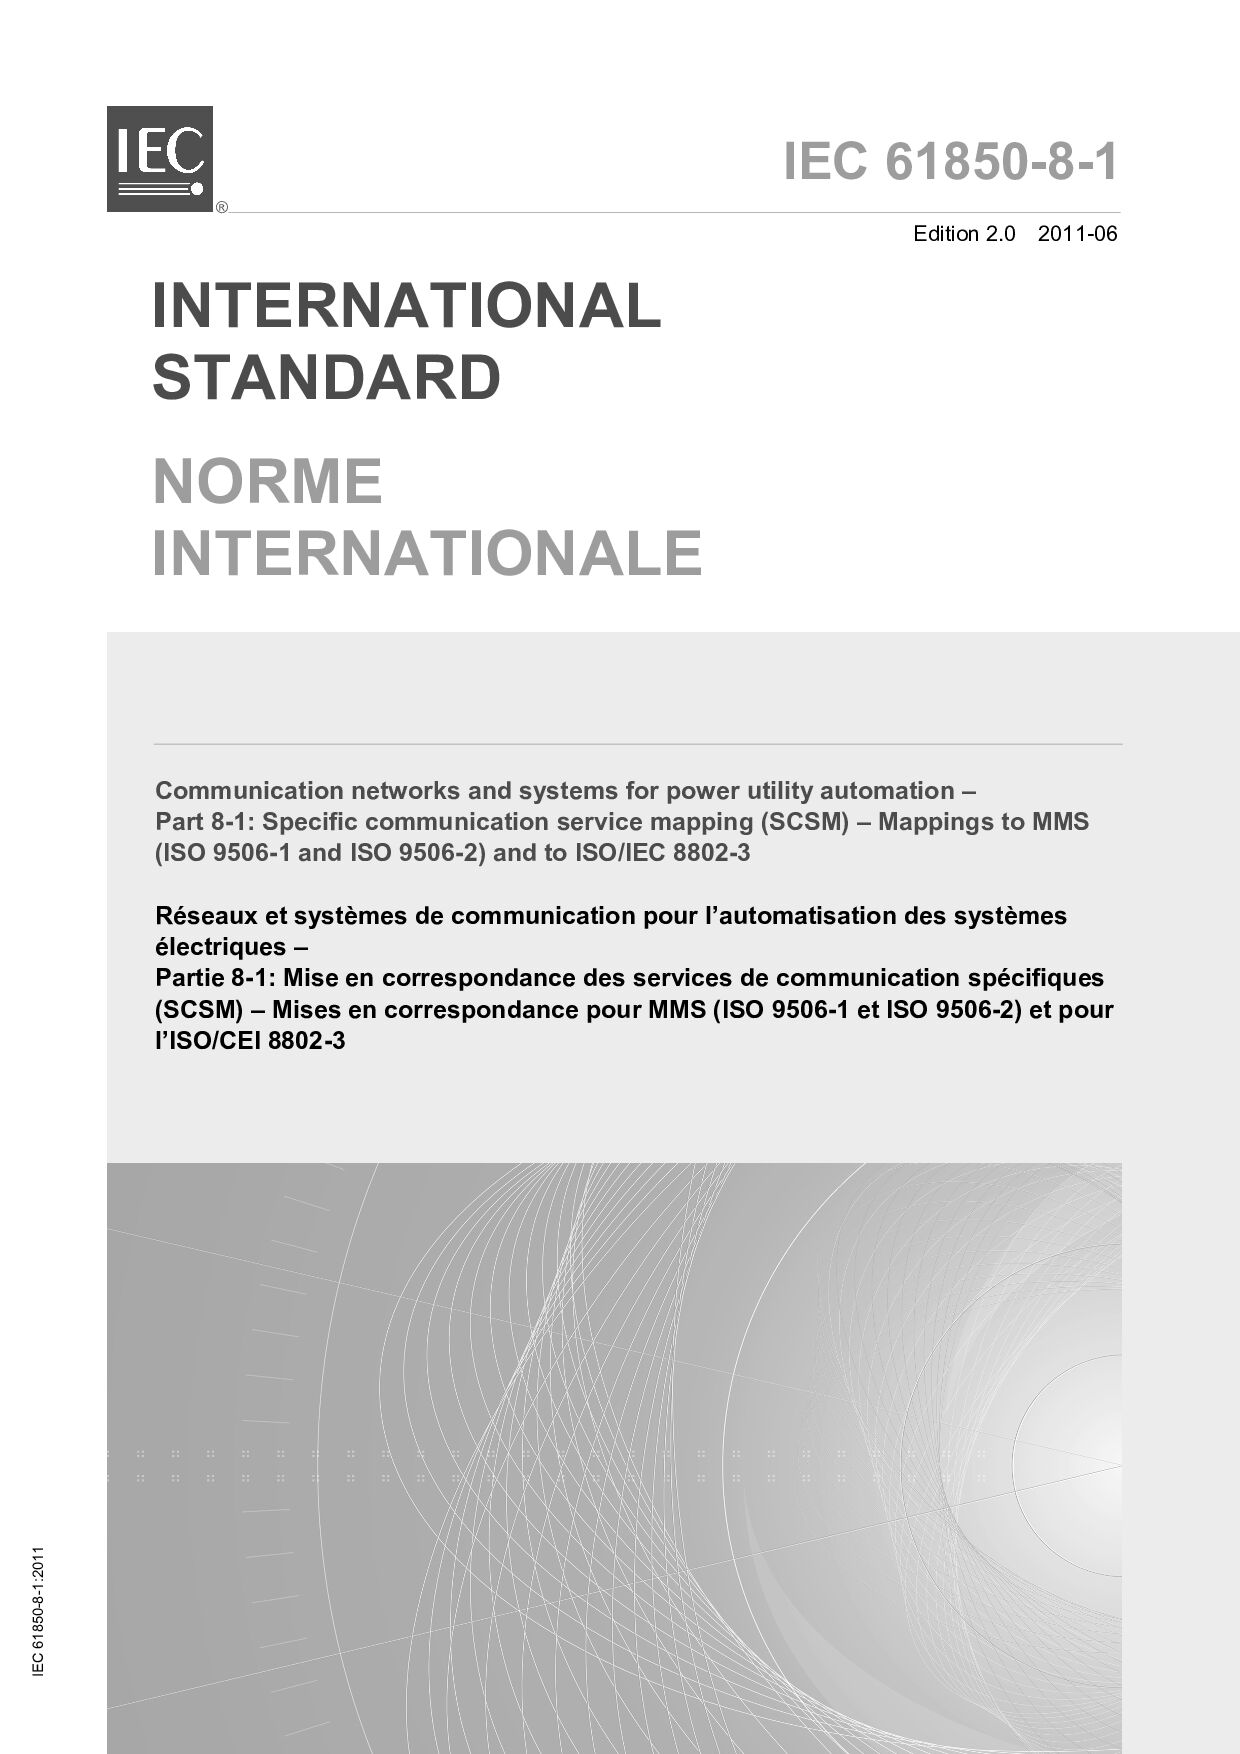 IEC 61850-8-1:2011